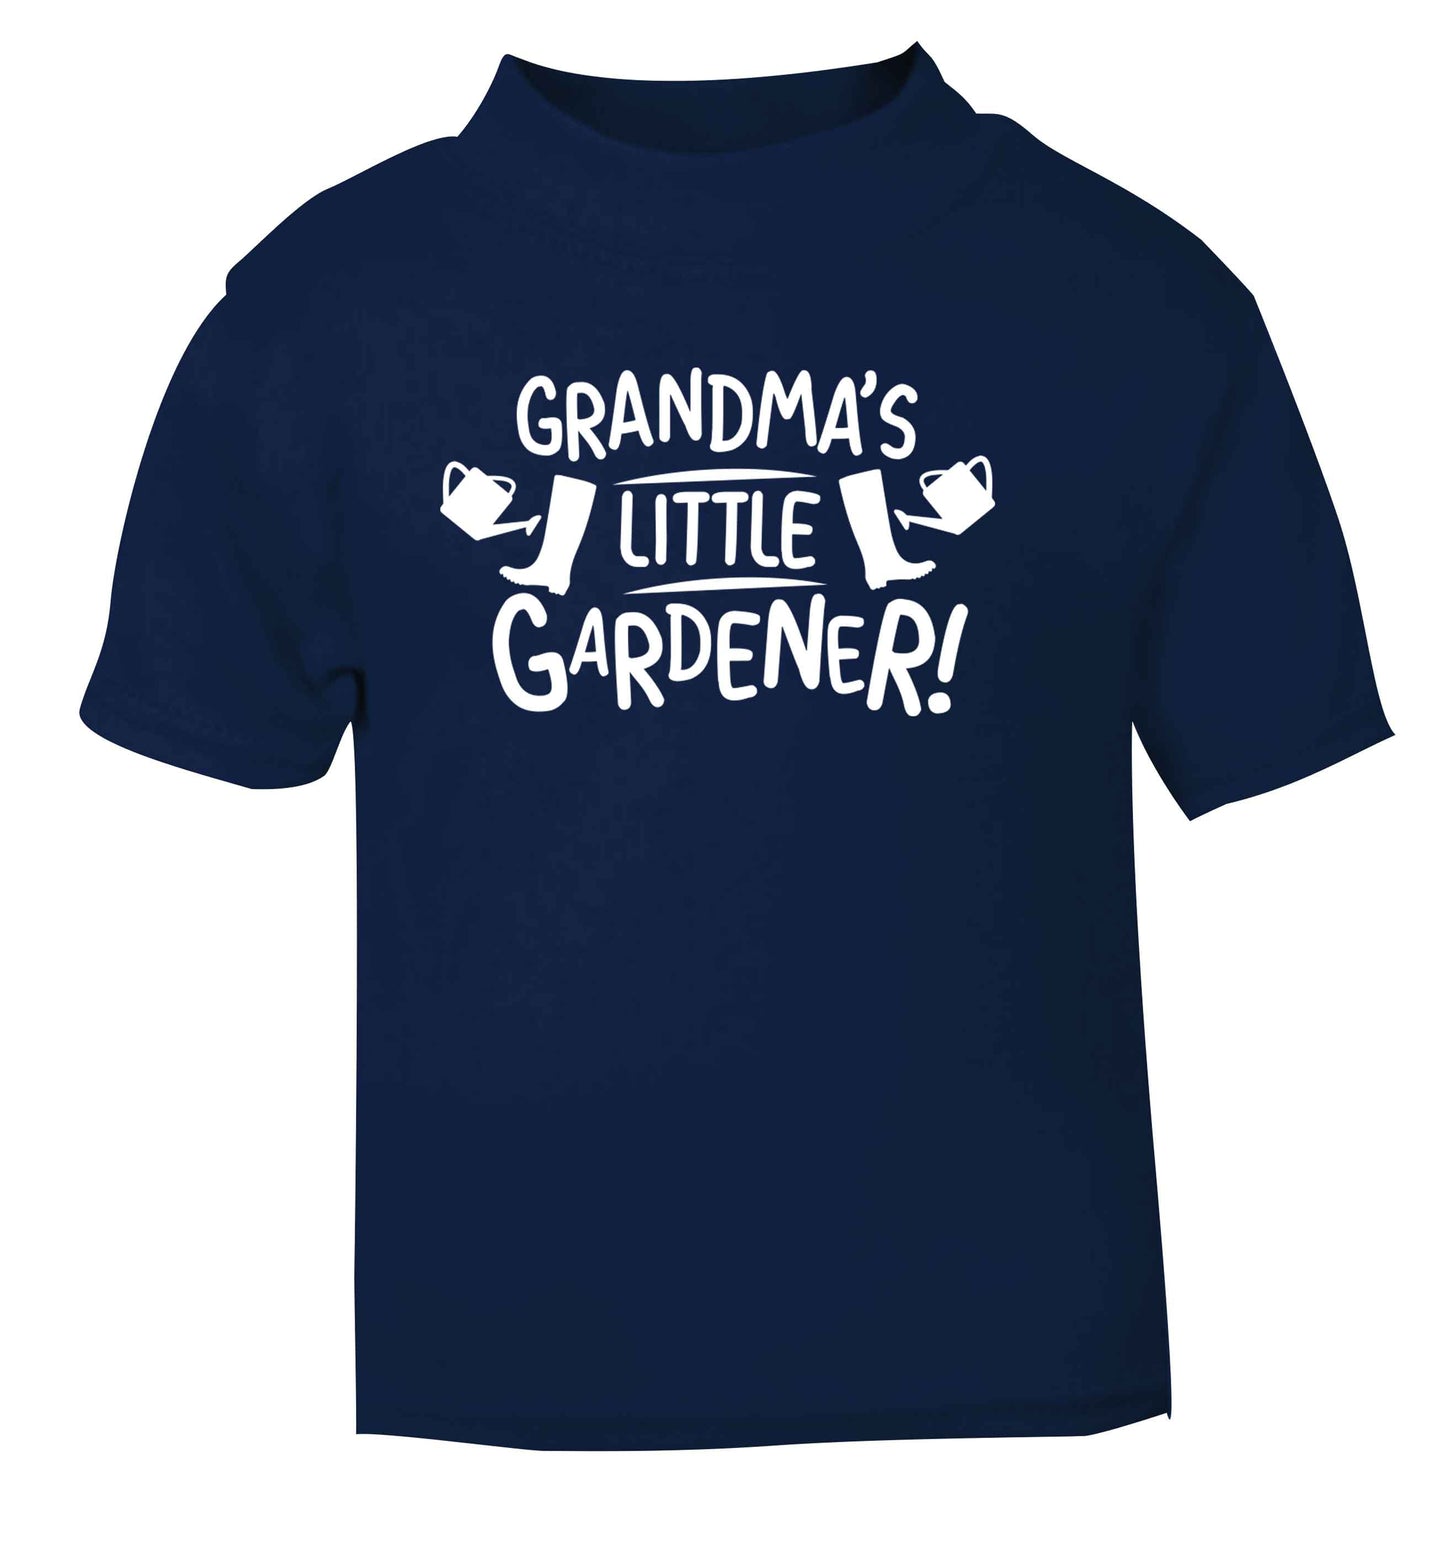 Grandma's little gardener navy Baby Toddler Tshirt 2 Years